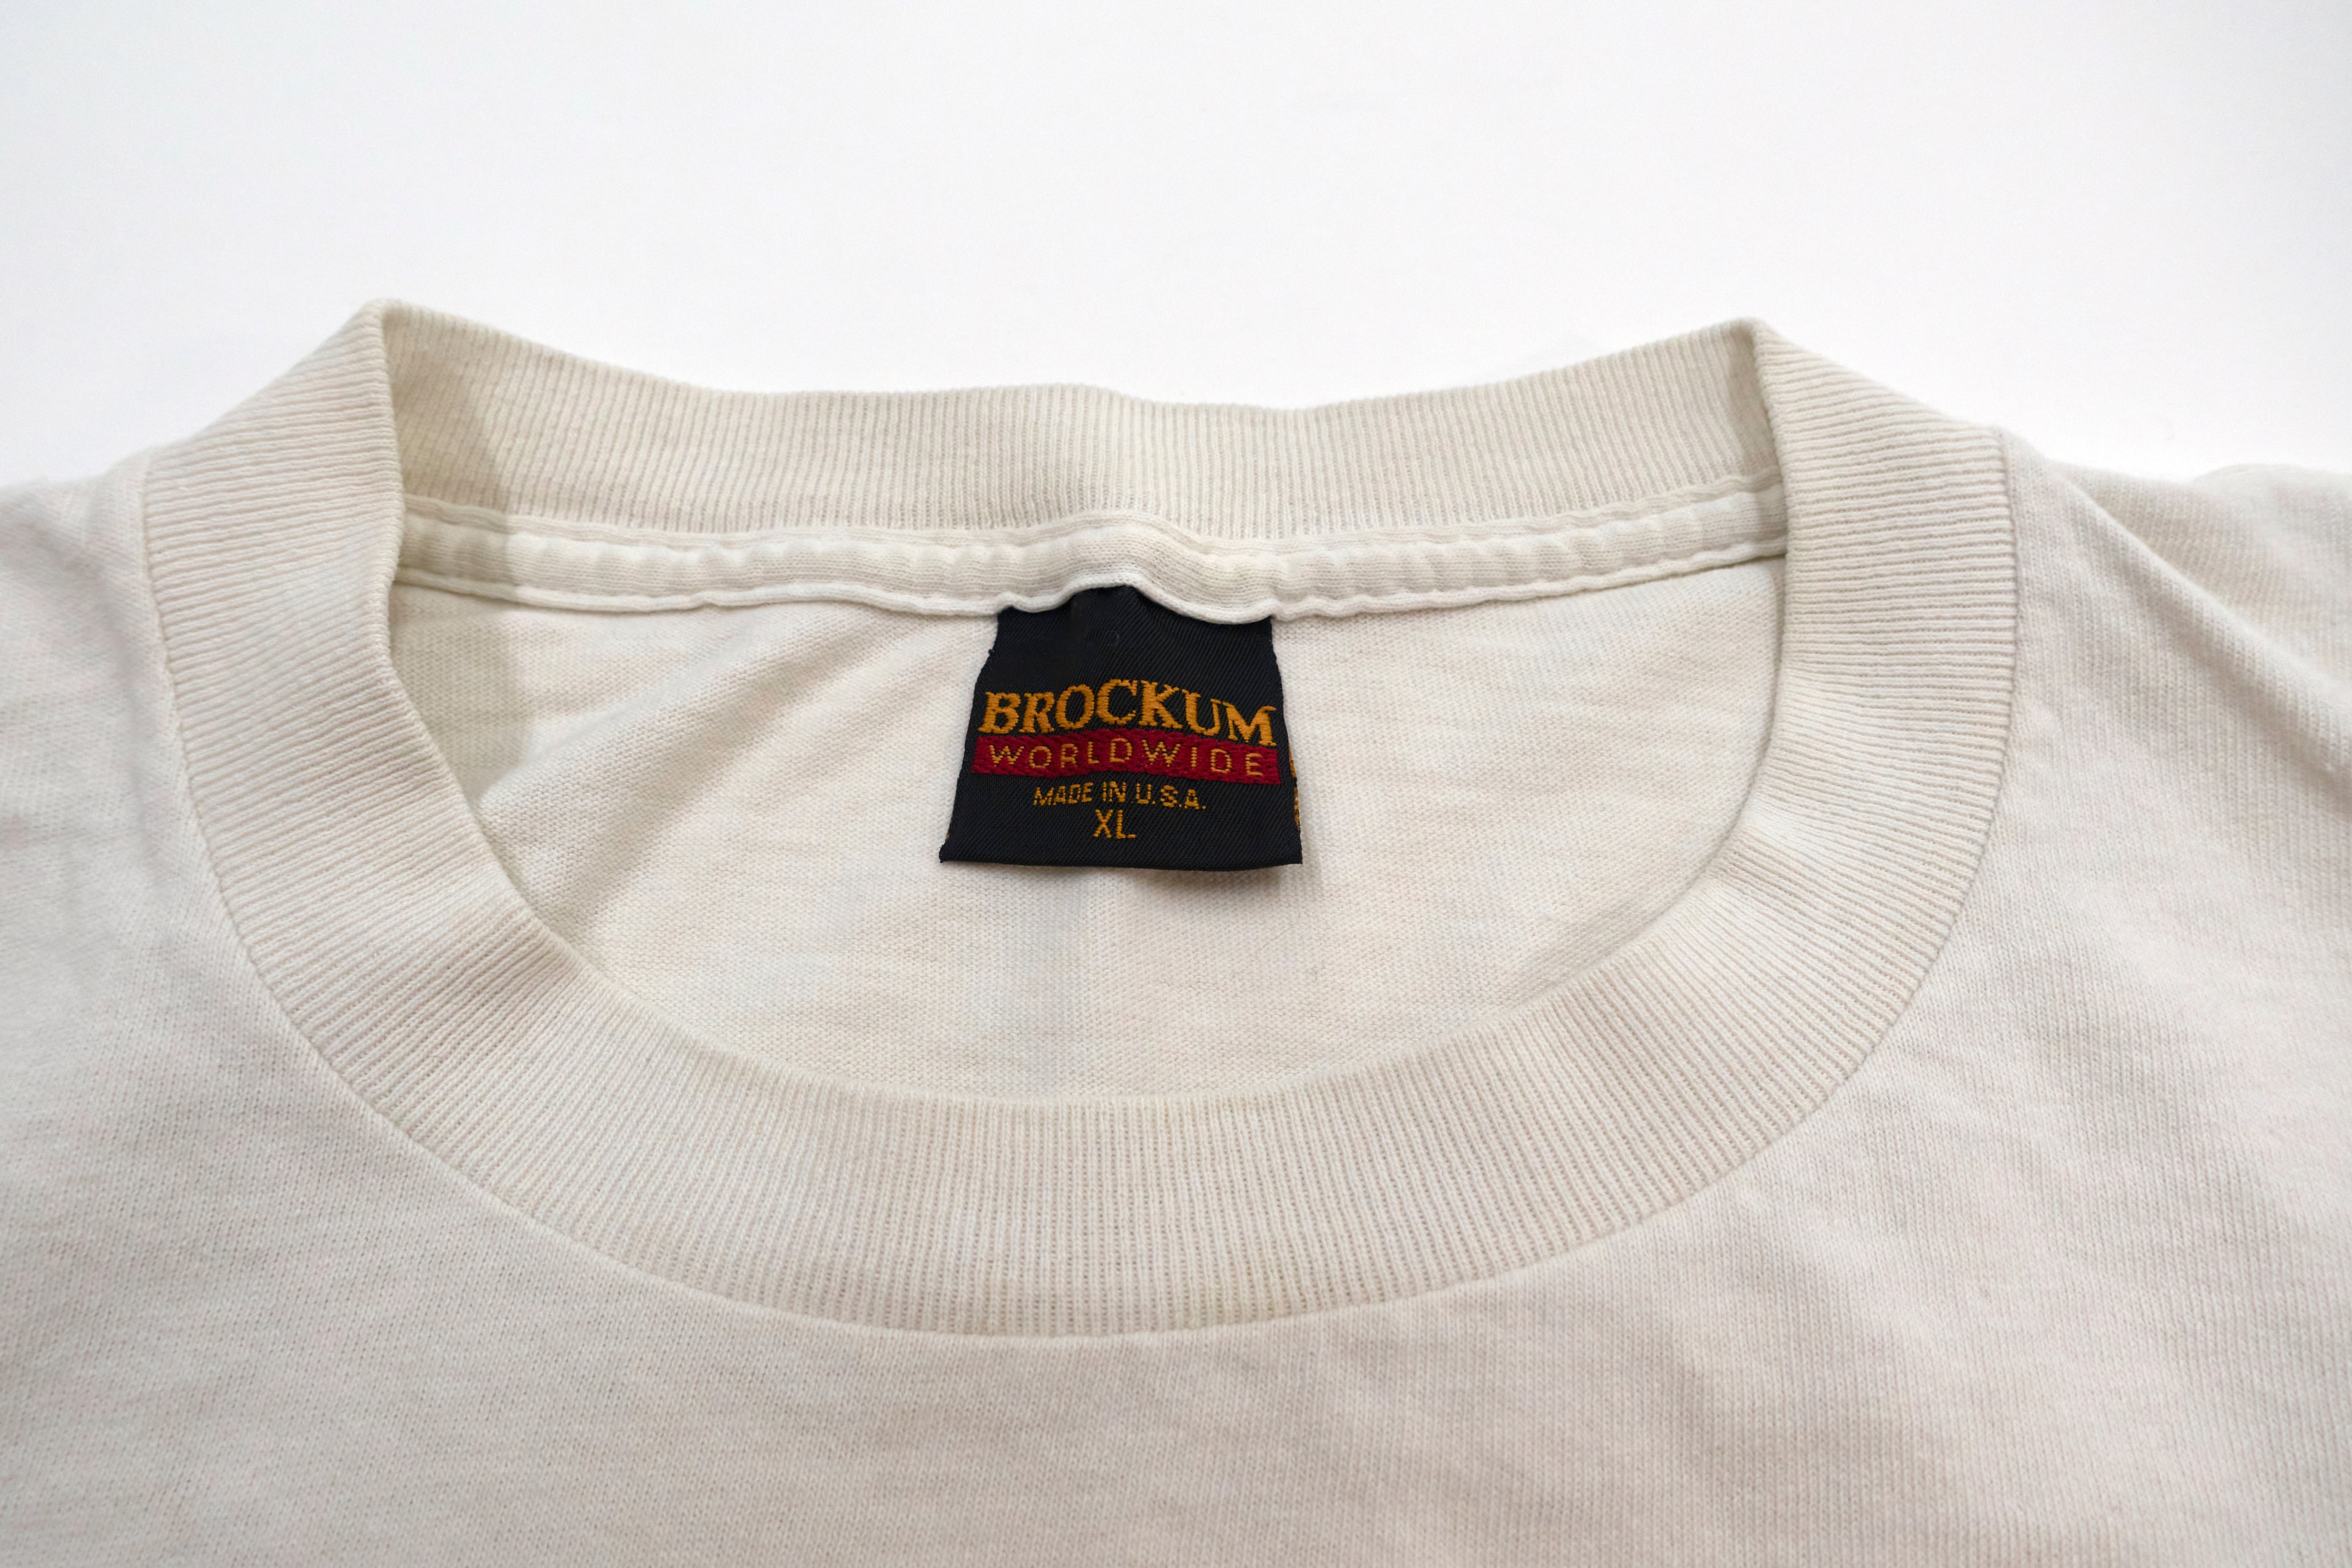 Urge Overkill - Unocal 76 Balll Logo Saturation 1993 Tour Shirt Size XL